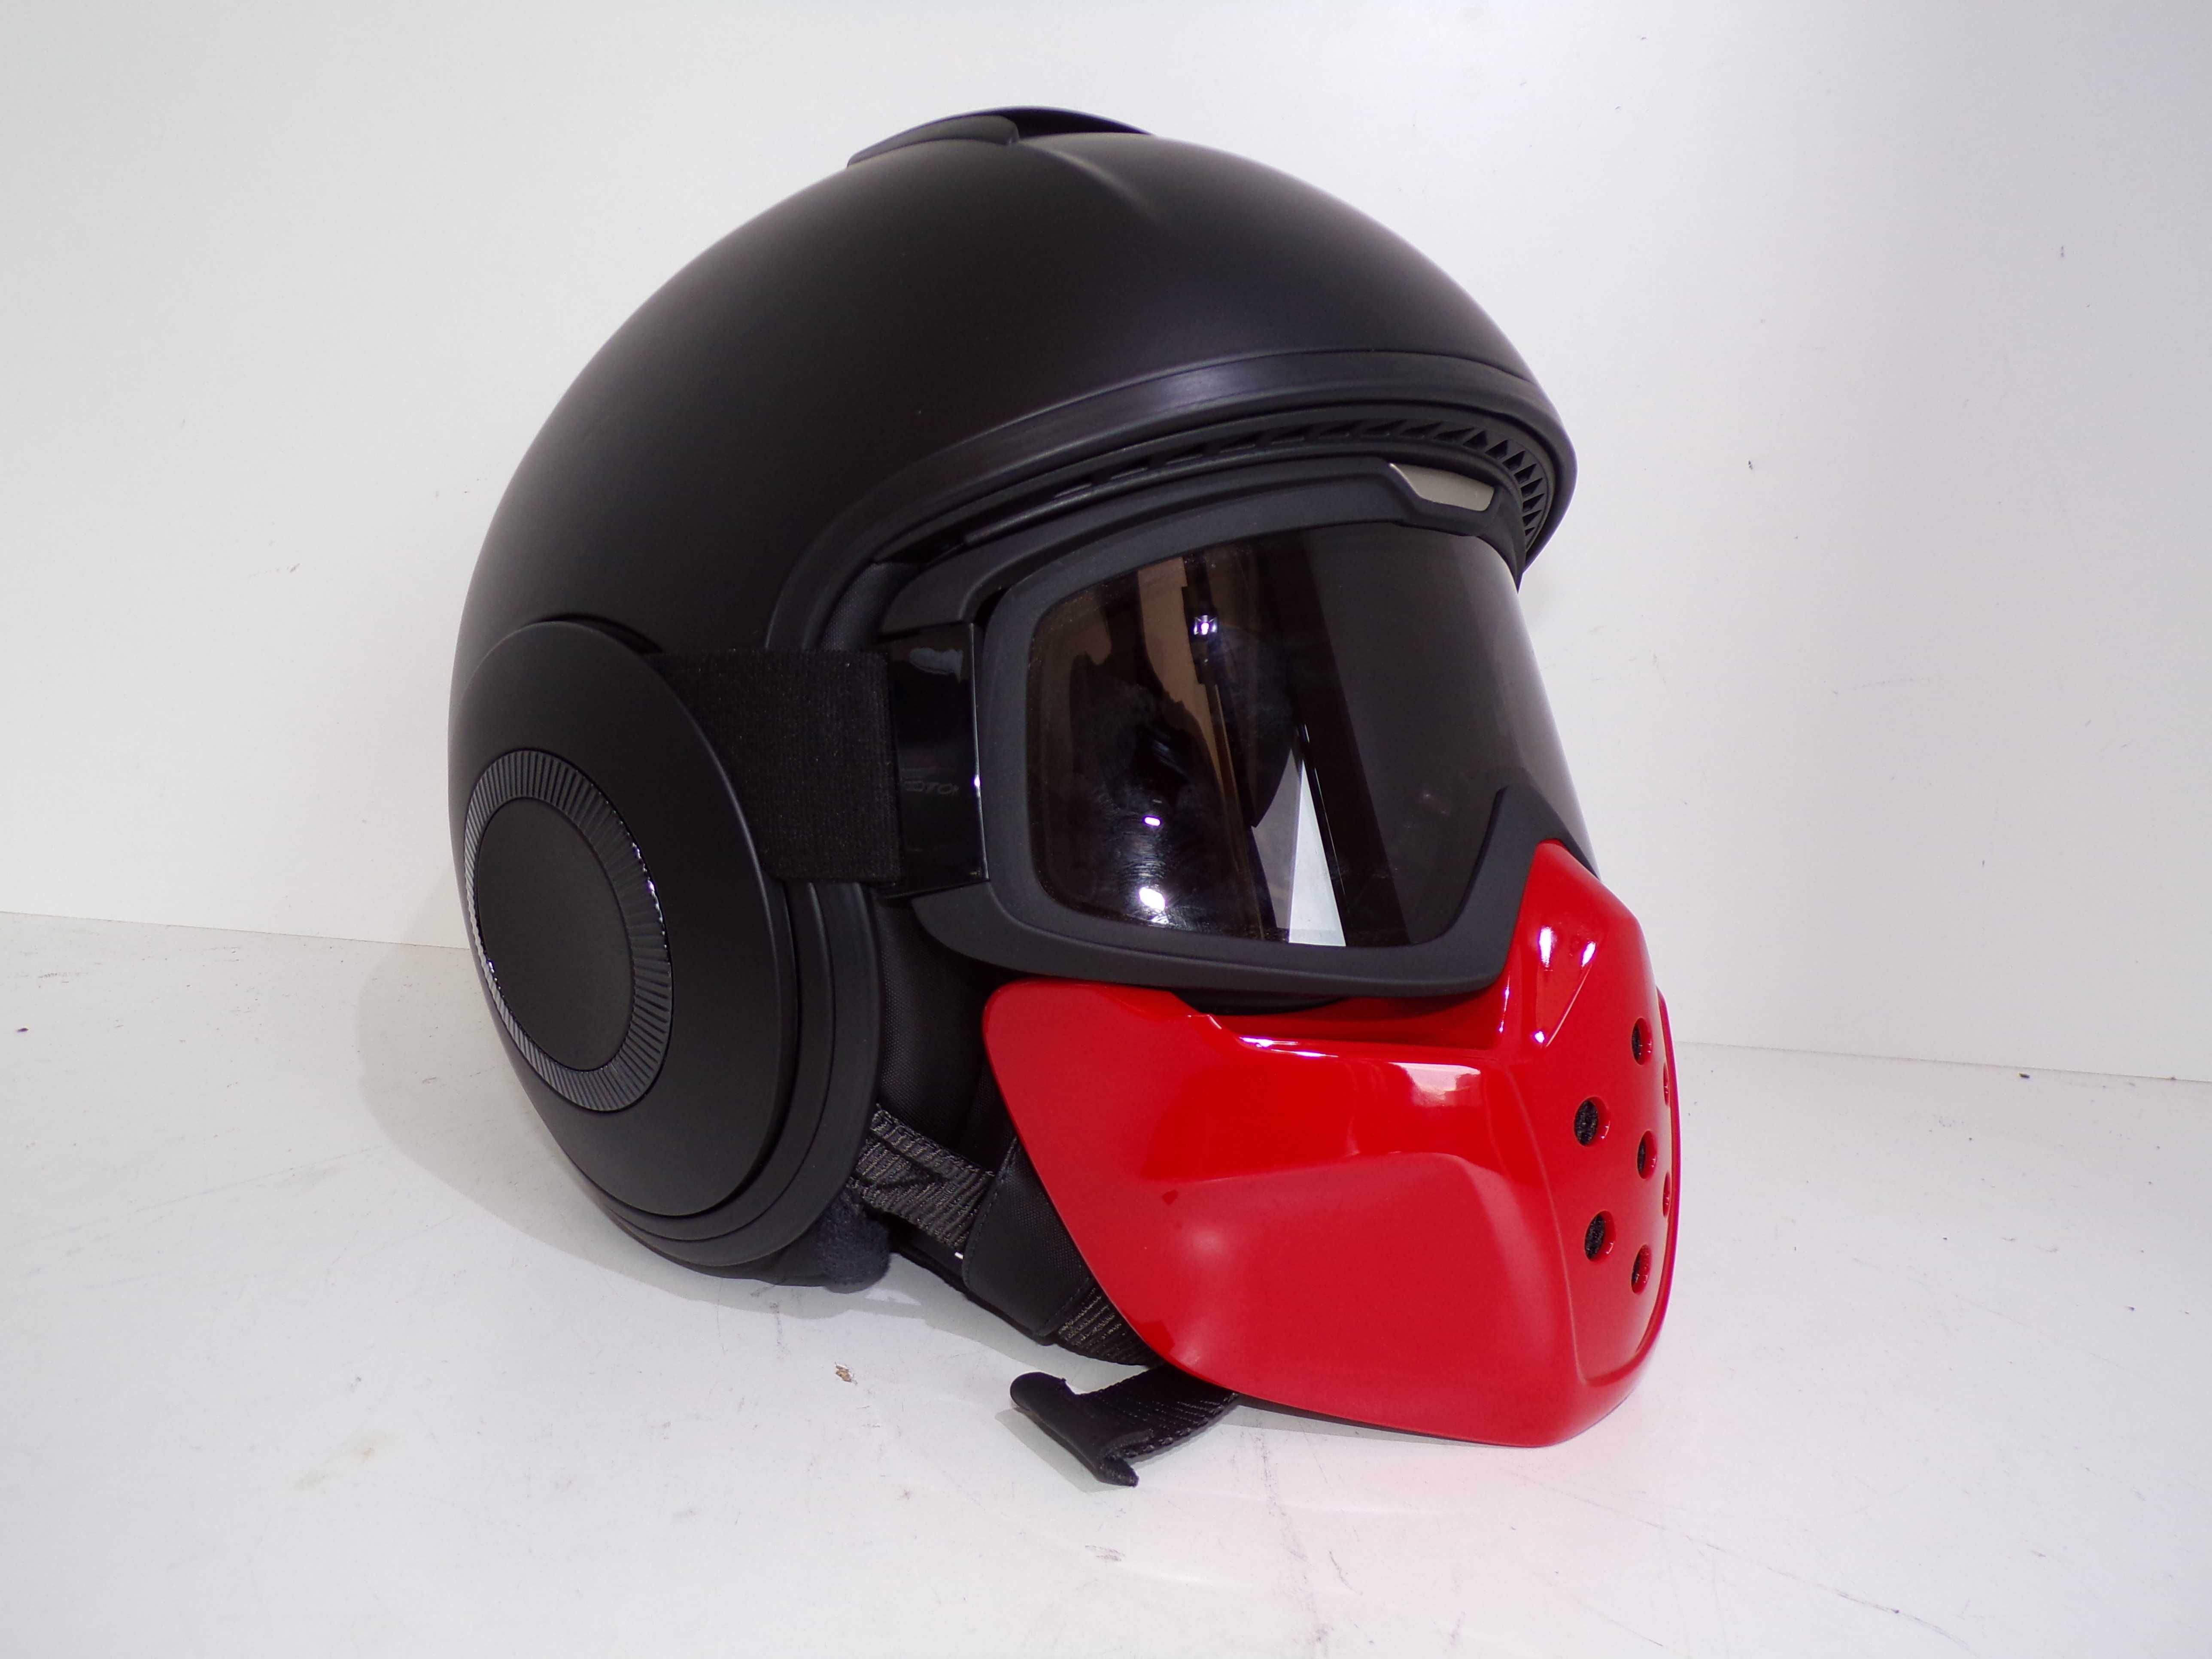 Oryginalny Kask Moto Guzzi z maska BANDIT Mask Helmet Matte Black M